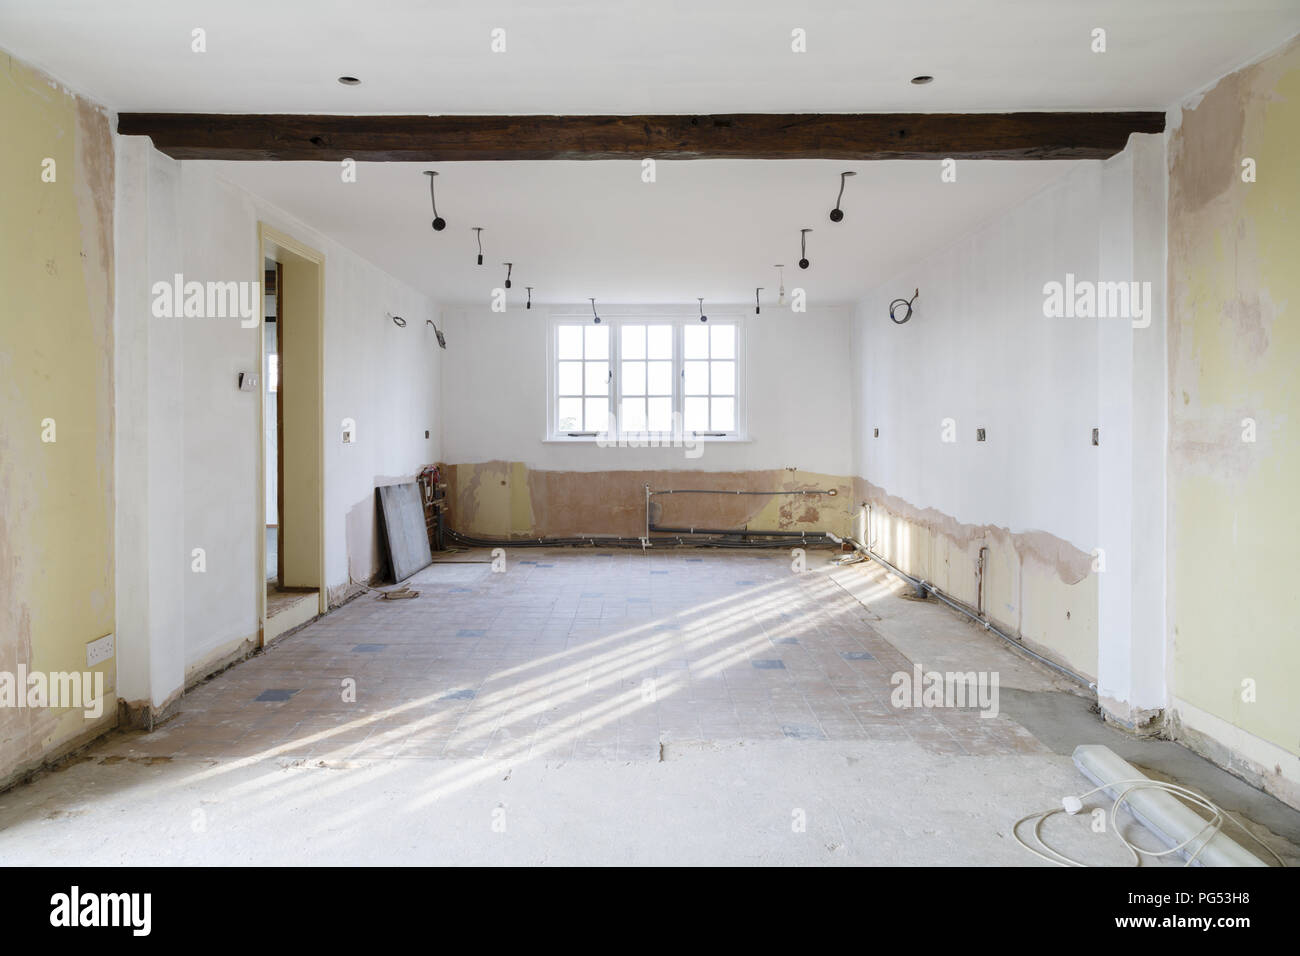 Salle vide dans une vieille maison en rénovation, rénovation et décoration, en préparation d'une cuisine reposer Banque D'Images